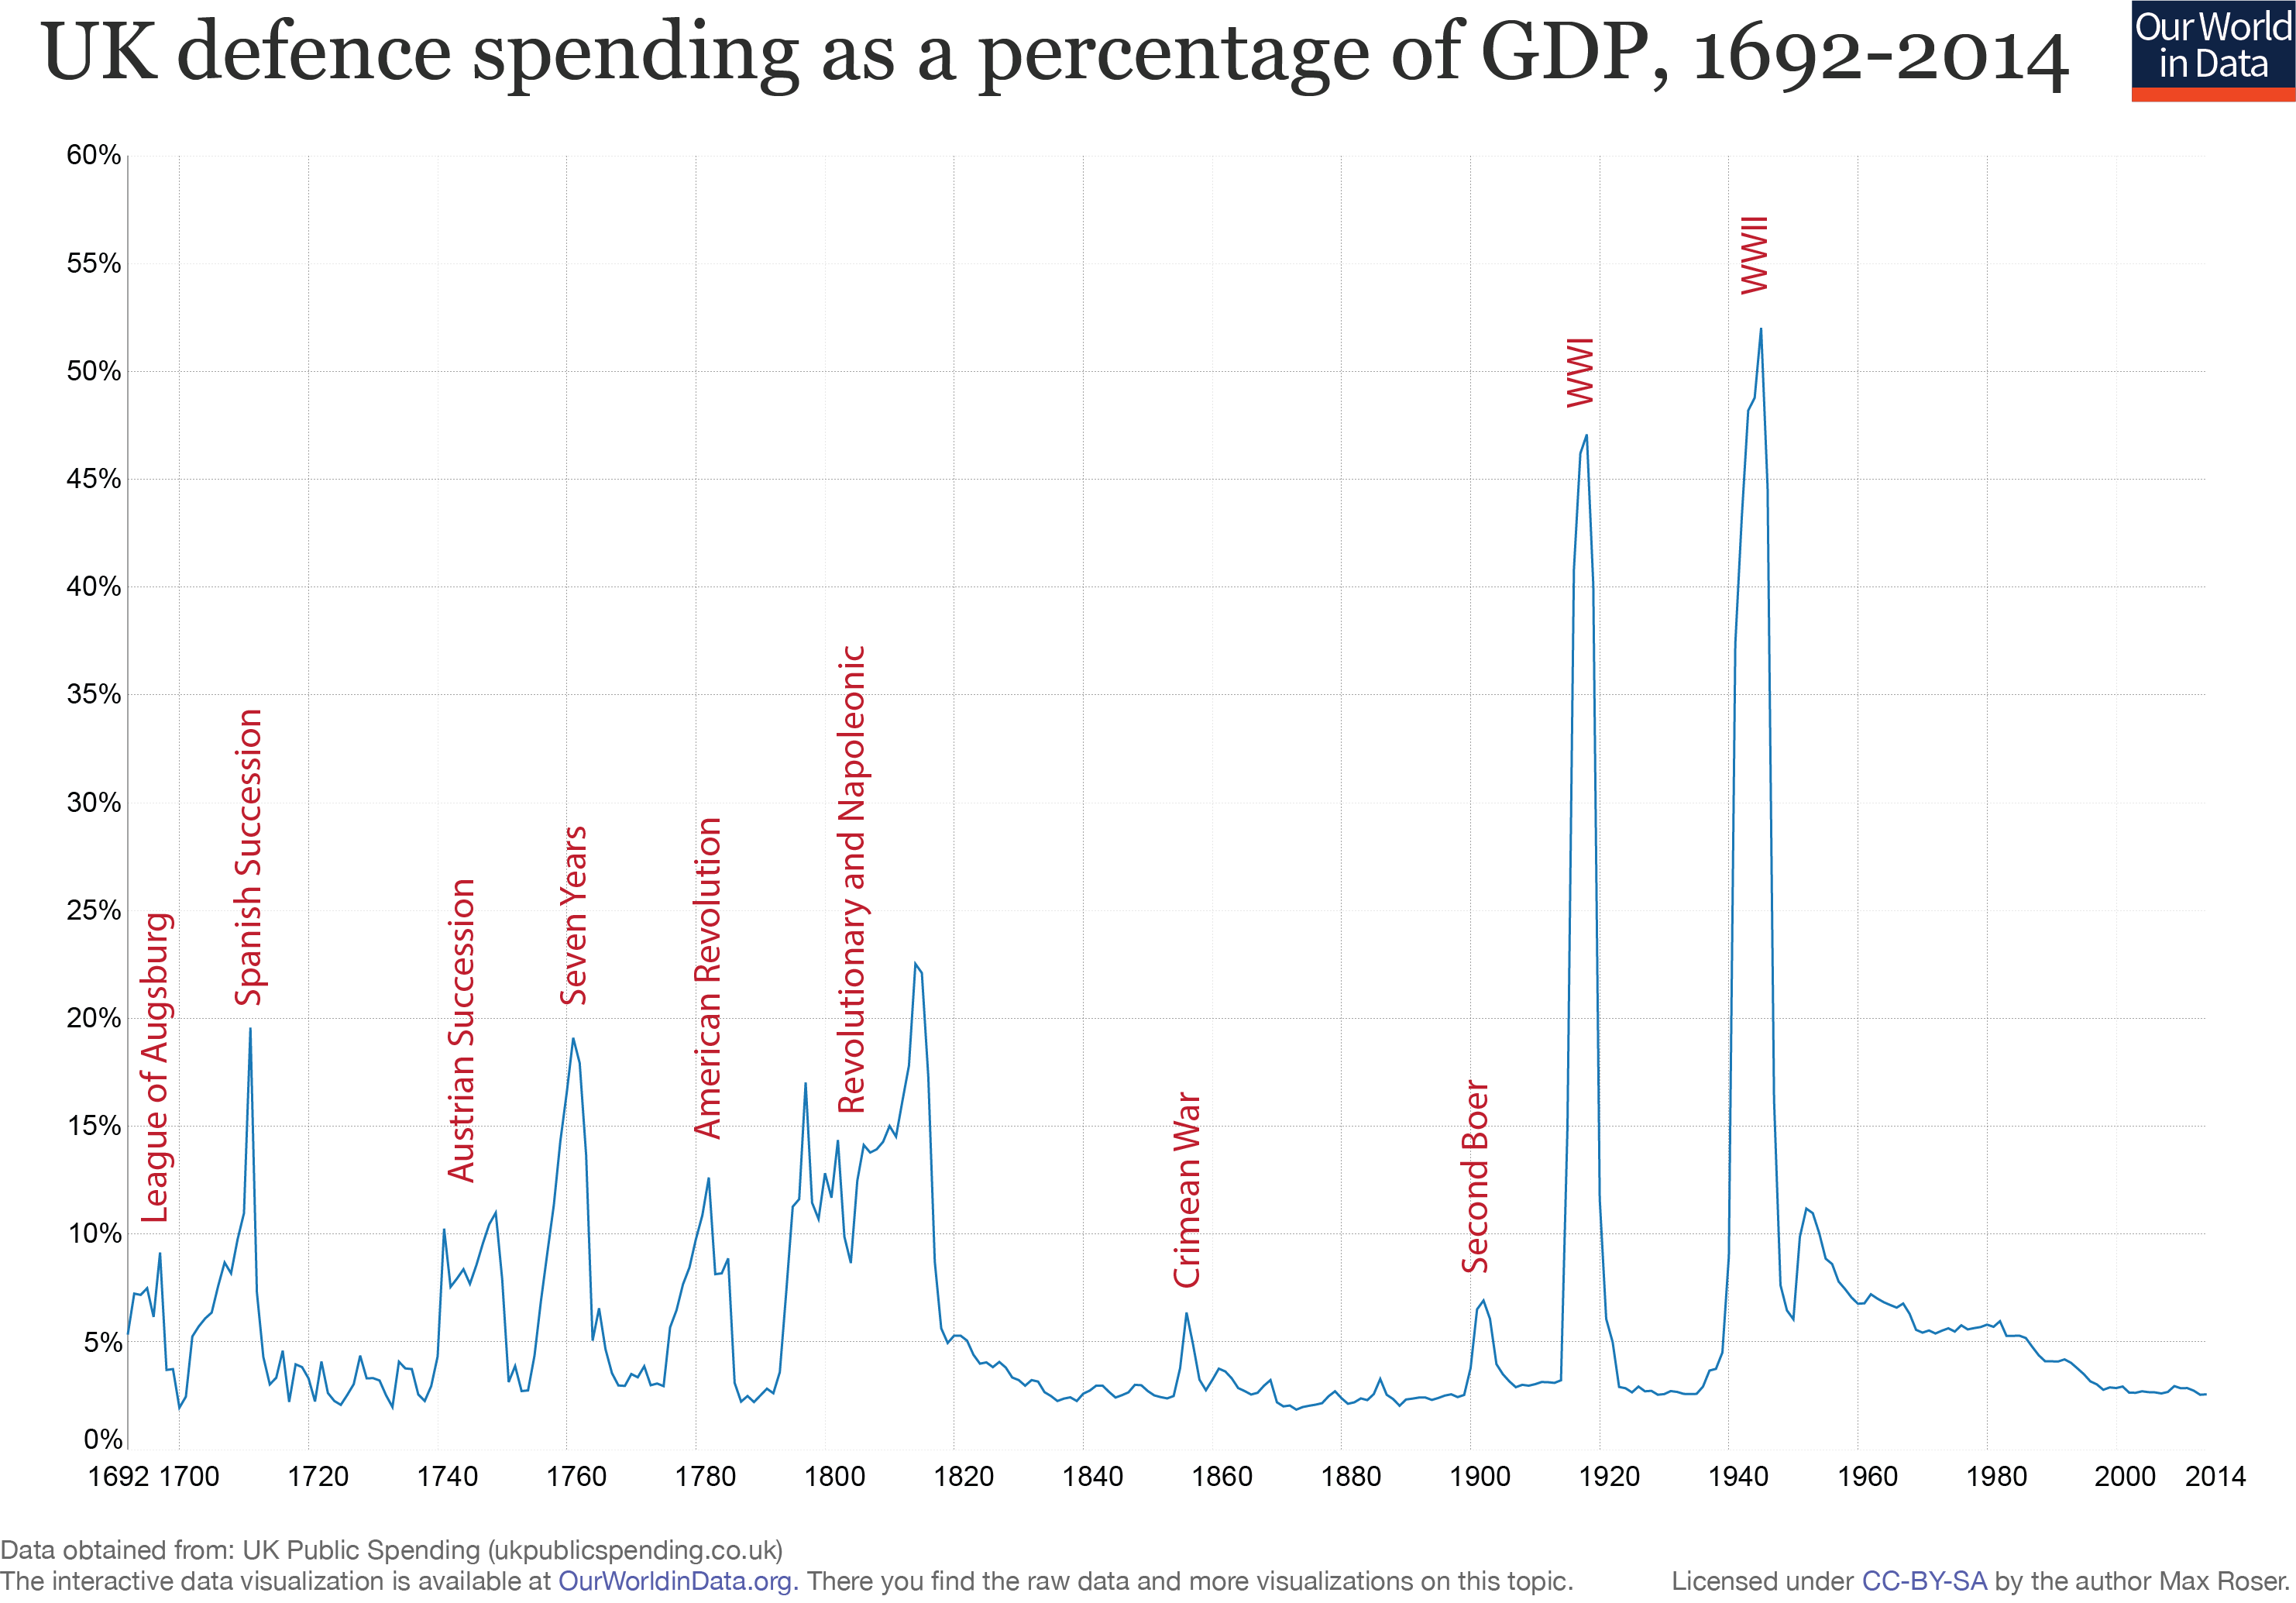 Defense Spending Chart